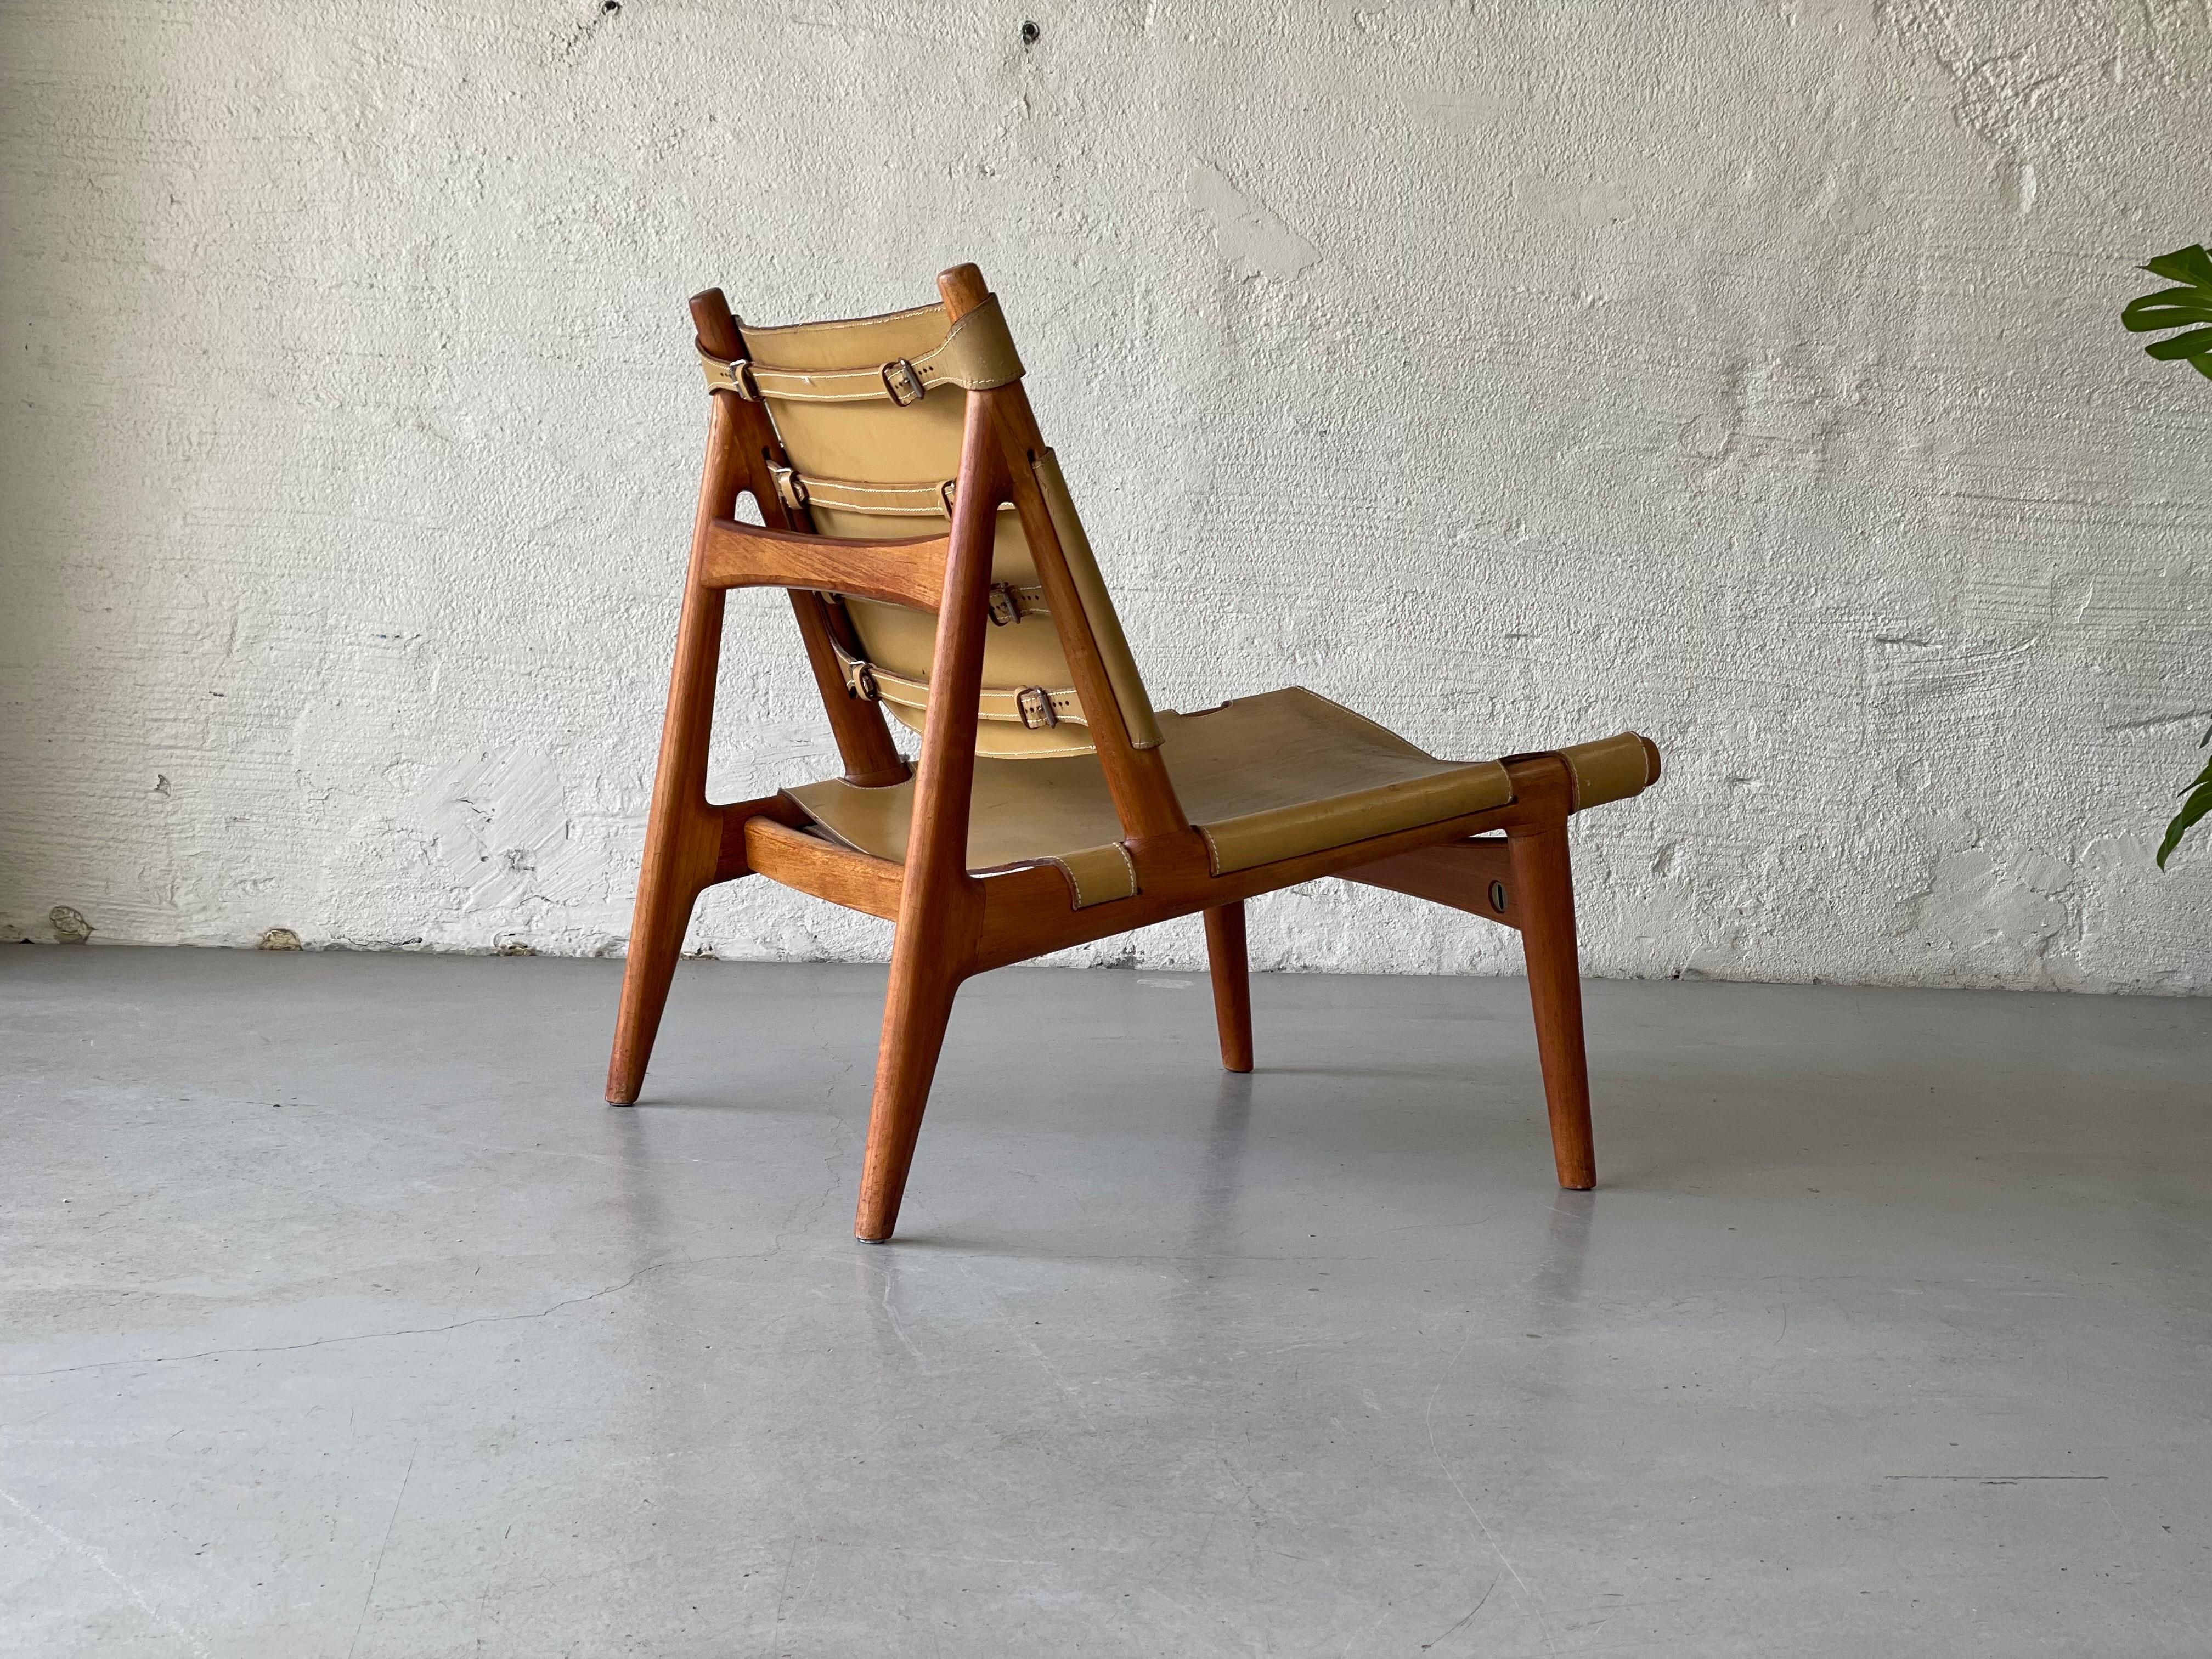 Eine einmalige Chance, einen von wenigen existierenden Torbjørn Afdals Hunter Chair zu bekommen.

Die Designbewegung der Jahrhundertmitte hat uns einige der kultigsten Möbeldesigns beschert, die die Welt je gesehen hat. Ein solcher Klassiker dieser